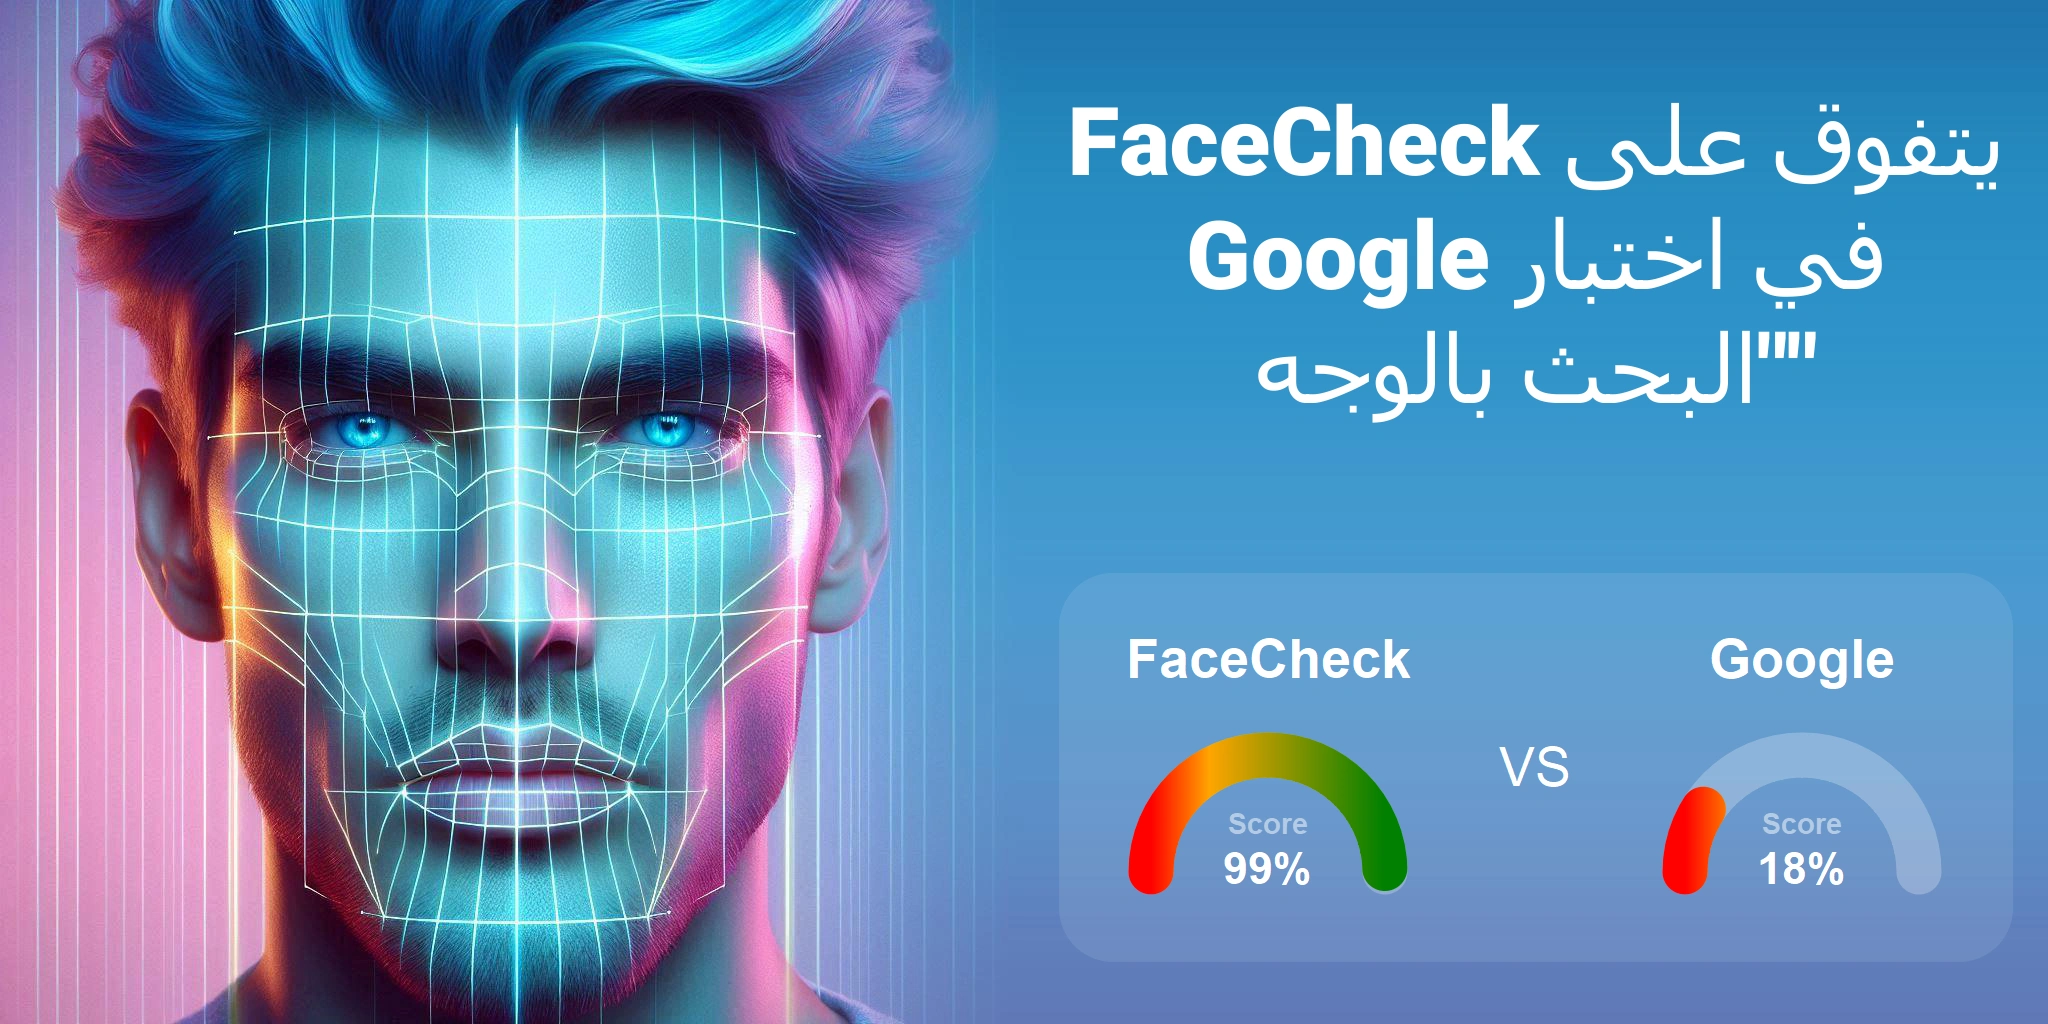 ما هو الأفضل للبحث بالوجه: <br>FaceCheck أو Google؟